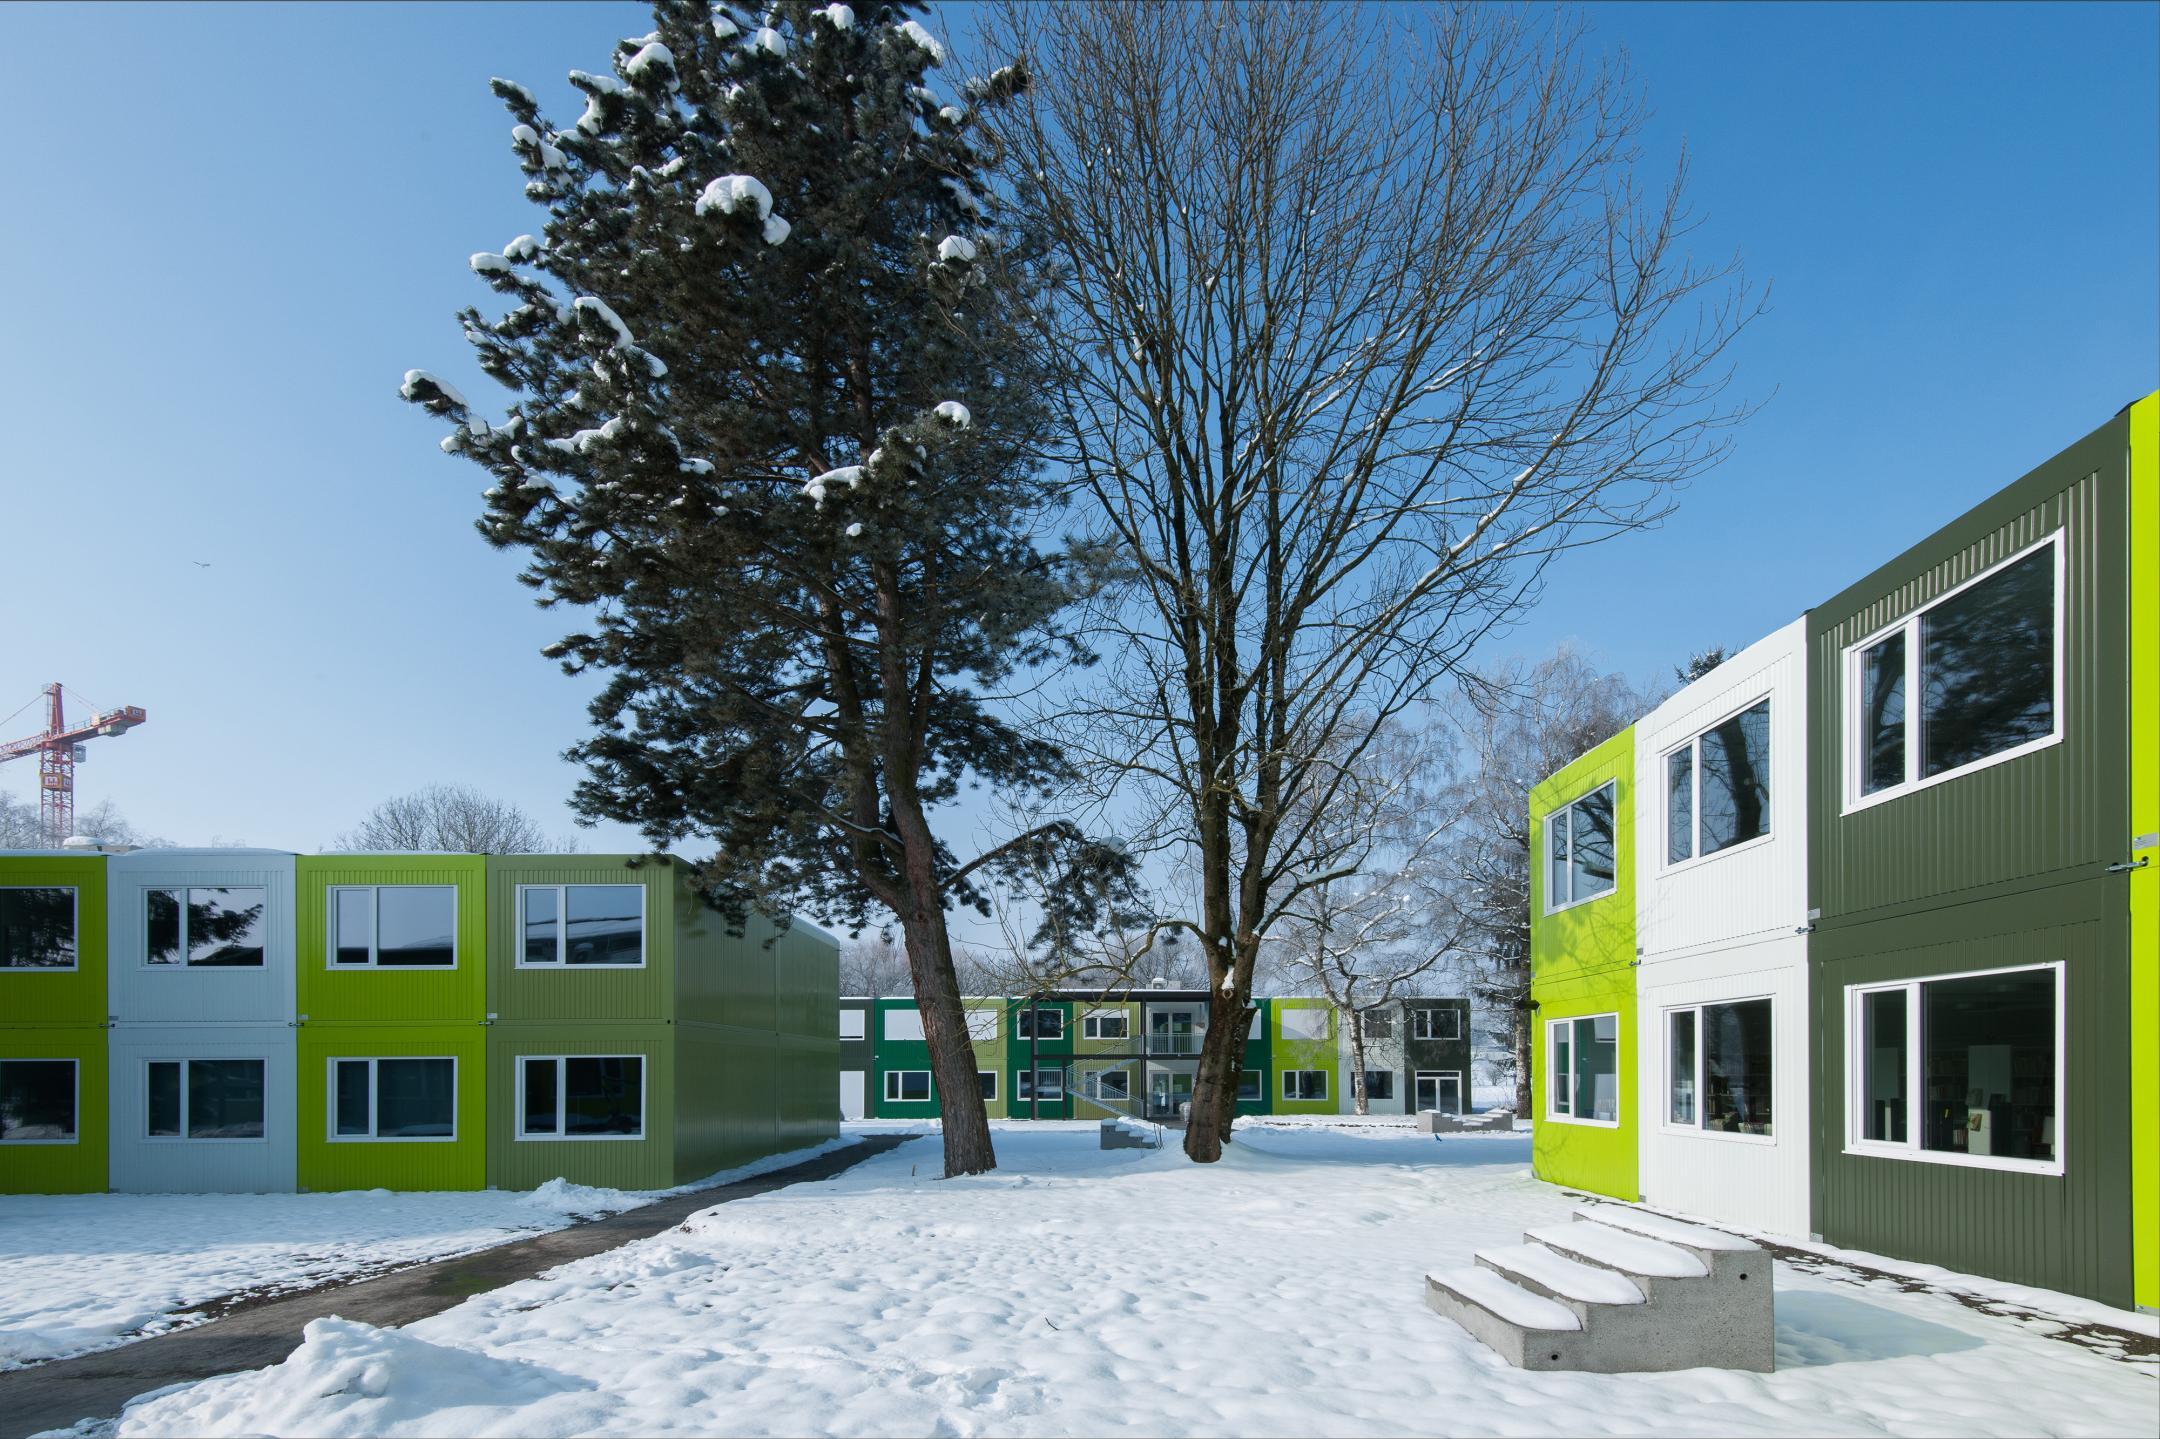 Baukörper in verschiedenen Grüntönen um zwei Bäume in einem verschneiten Park platziert.